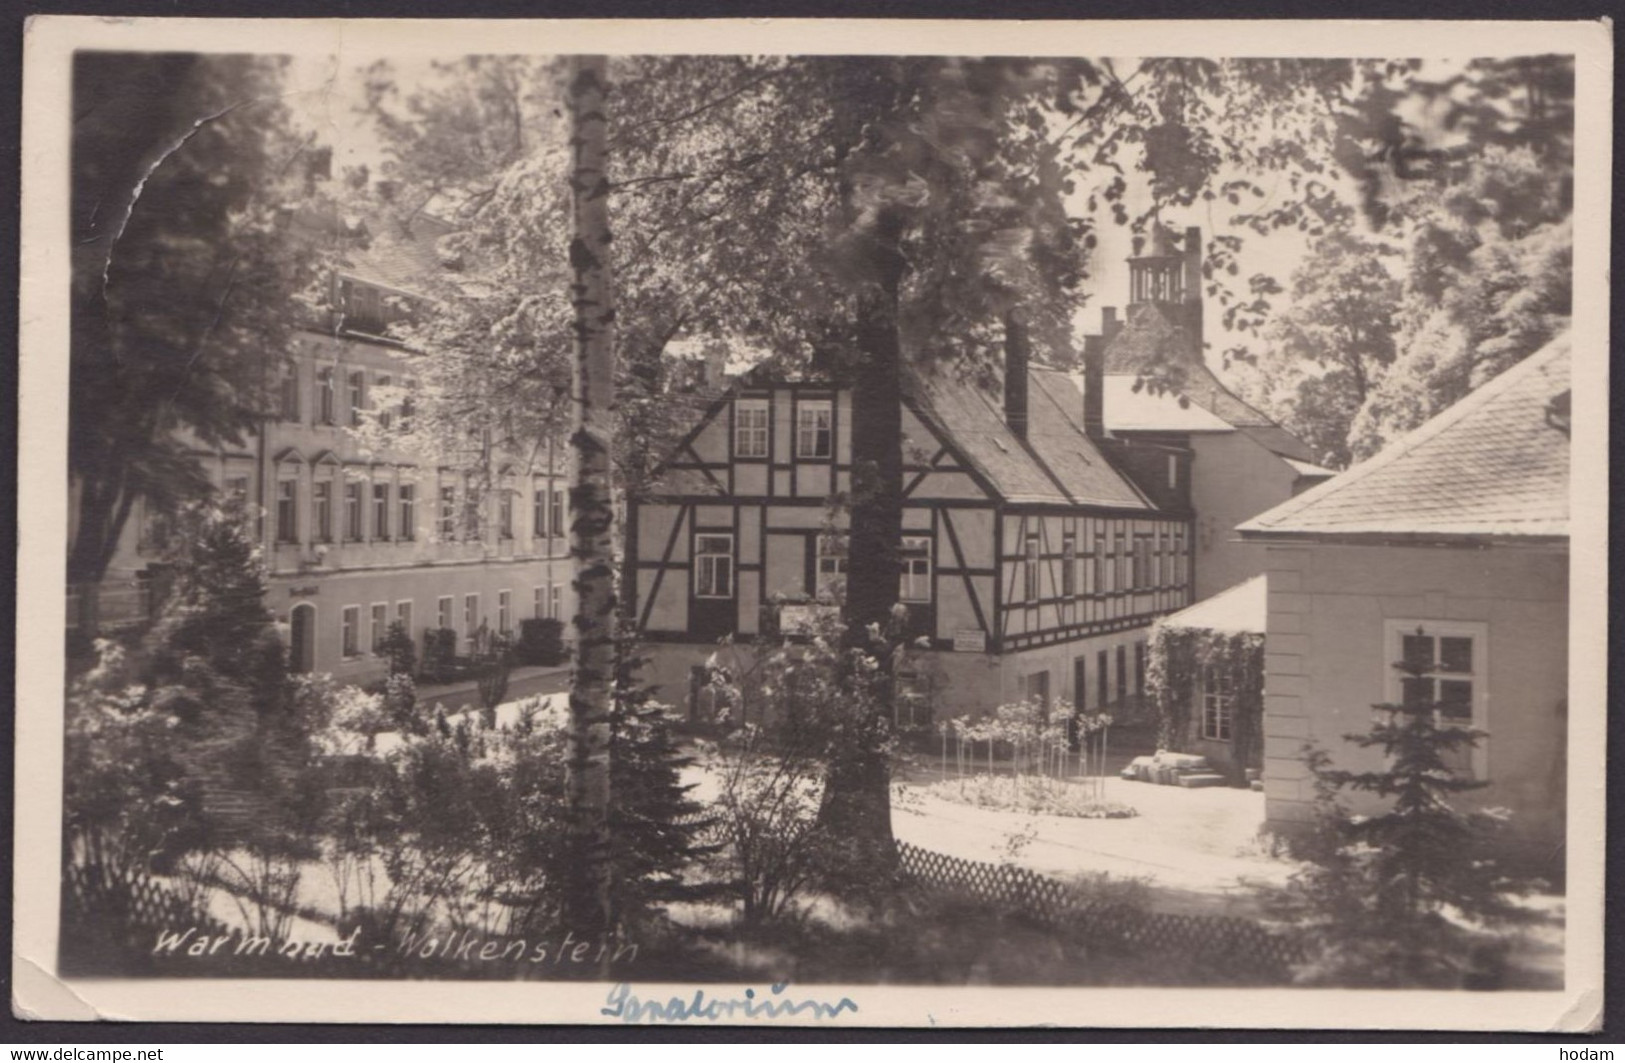 "Warmbad-Wolkenstein", Fotokarte, 1950 Gelaufen - Wolkenstein